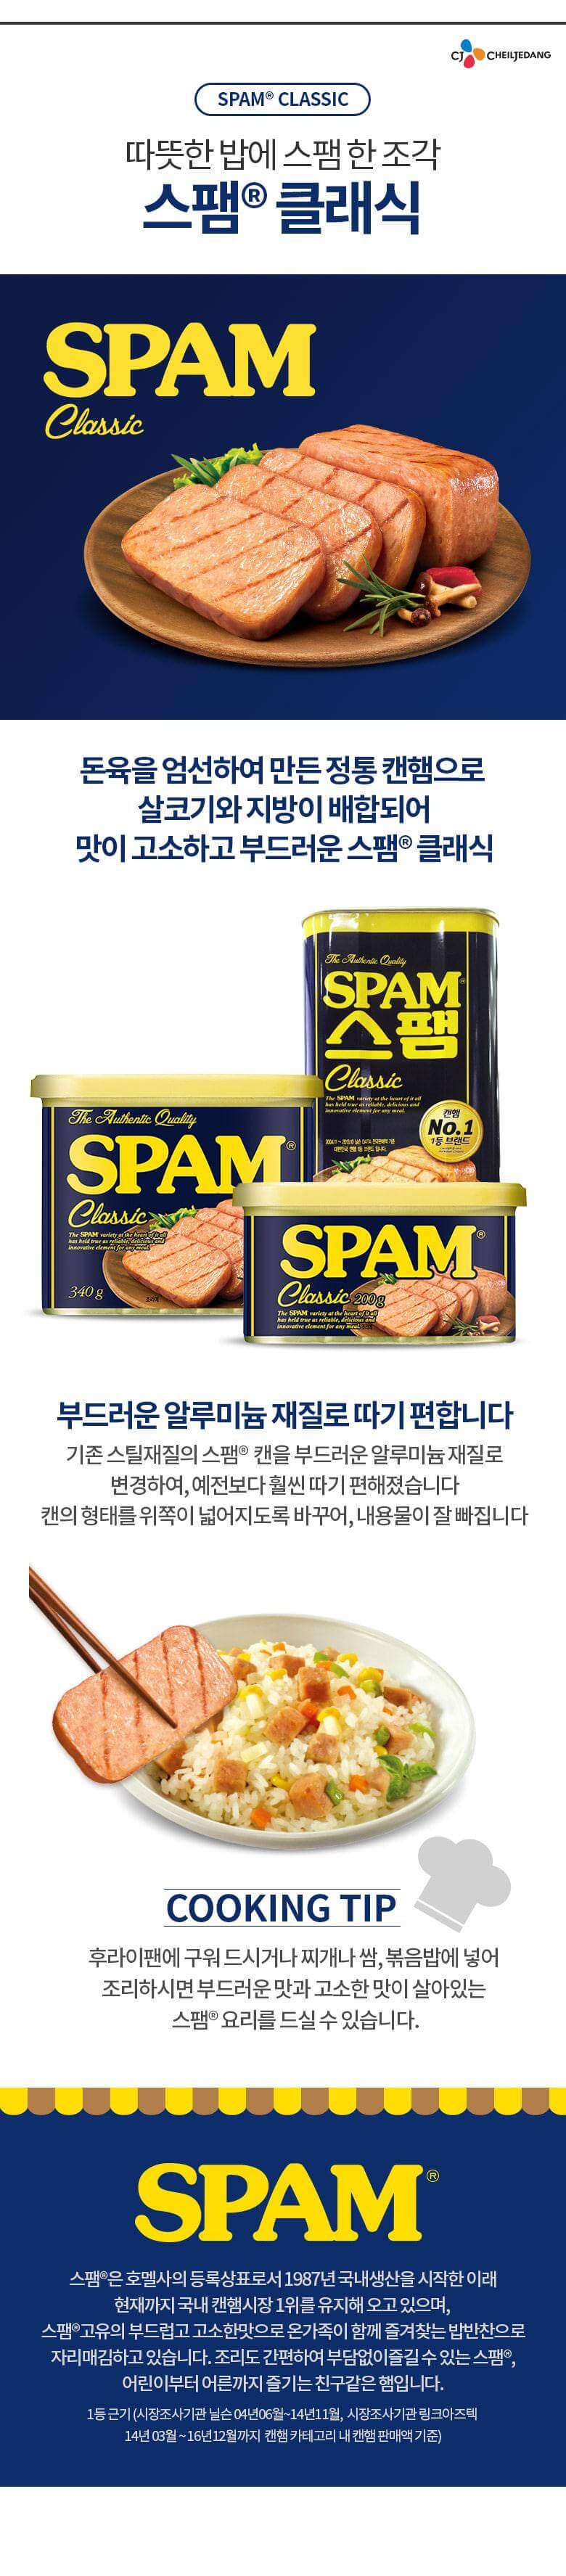 韓國食品-[CJ] Spam[Classic] 200g